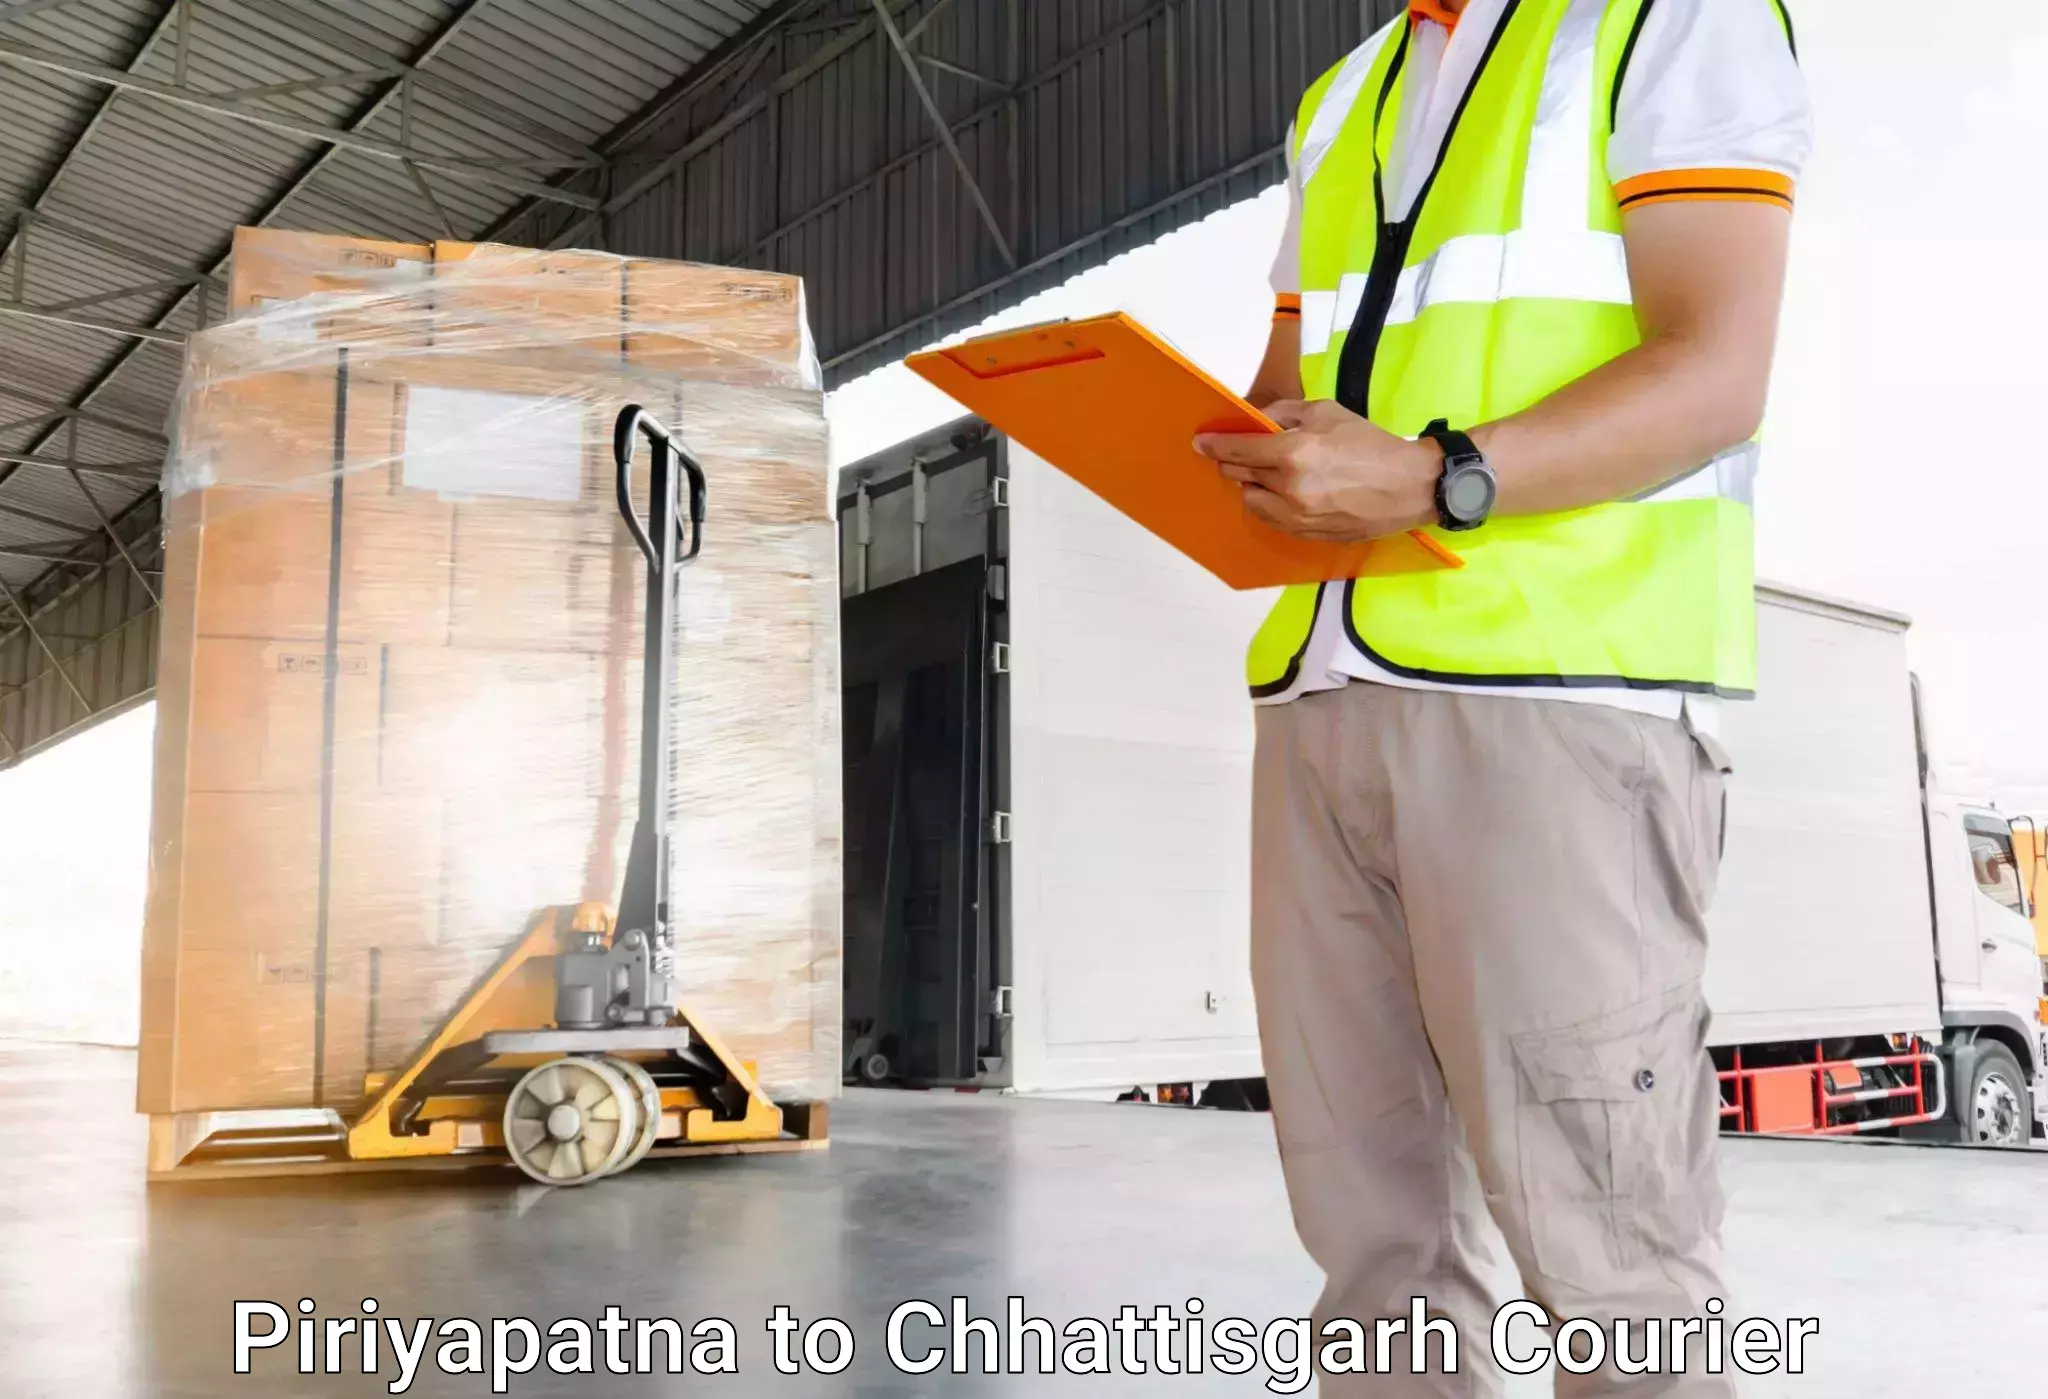 Efficient baggage transport in Piriyapatna to Pakhanjur